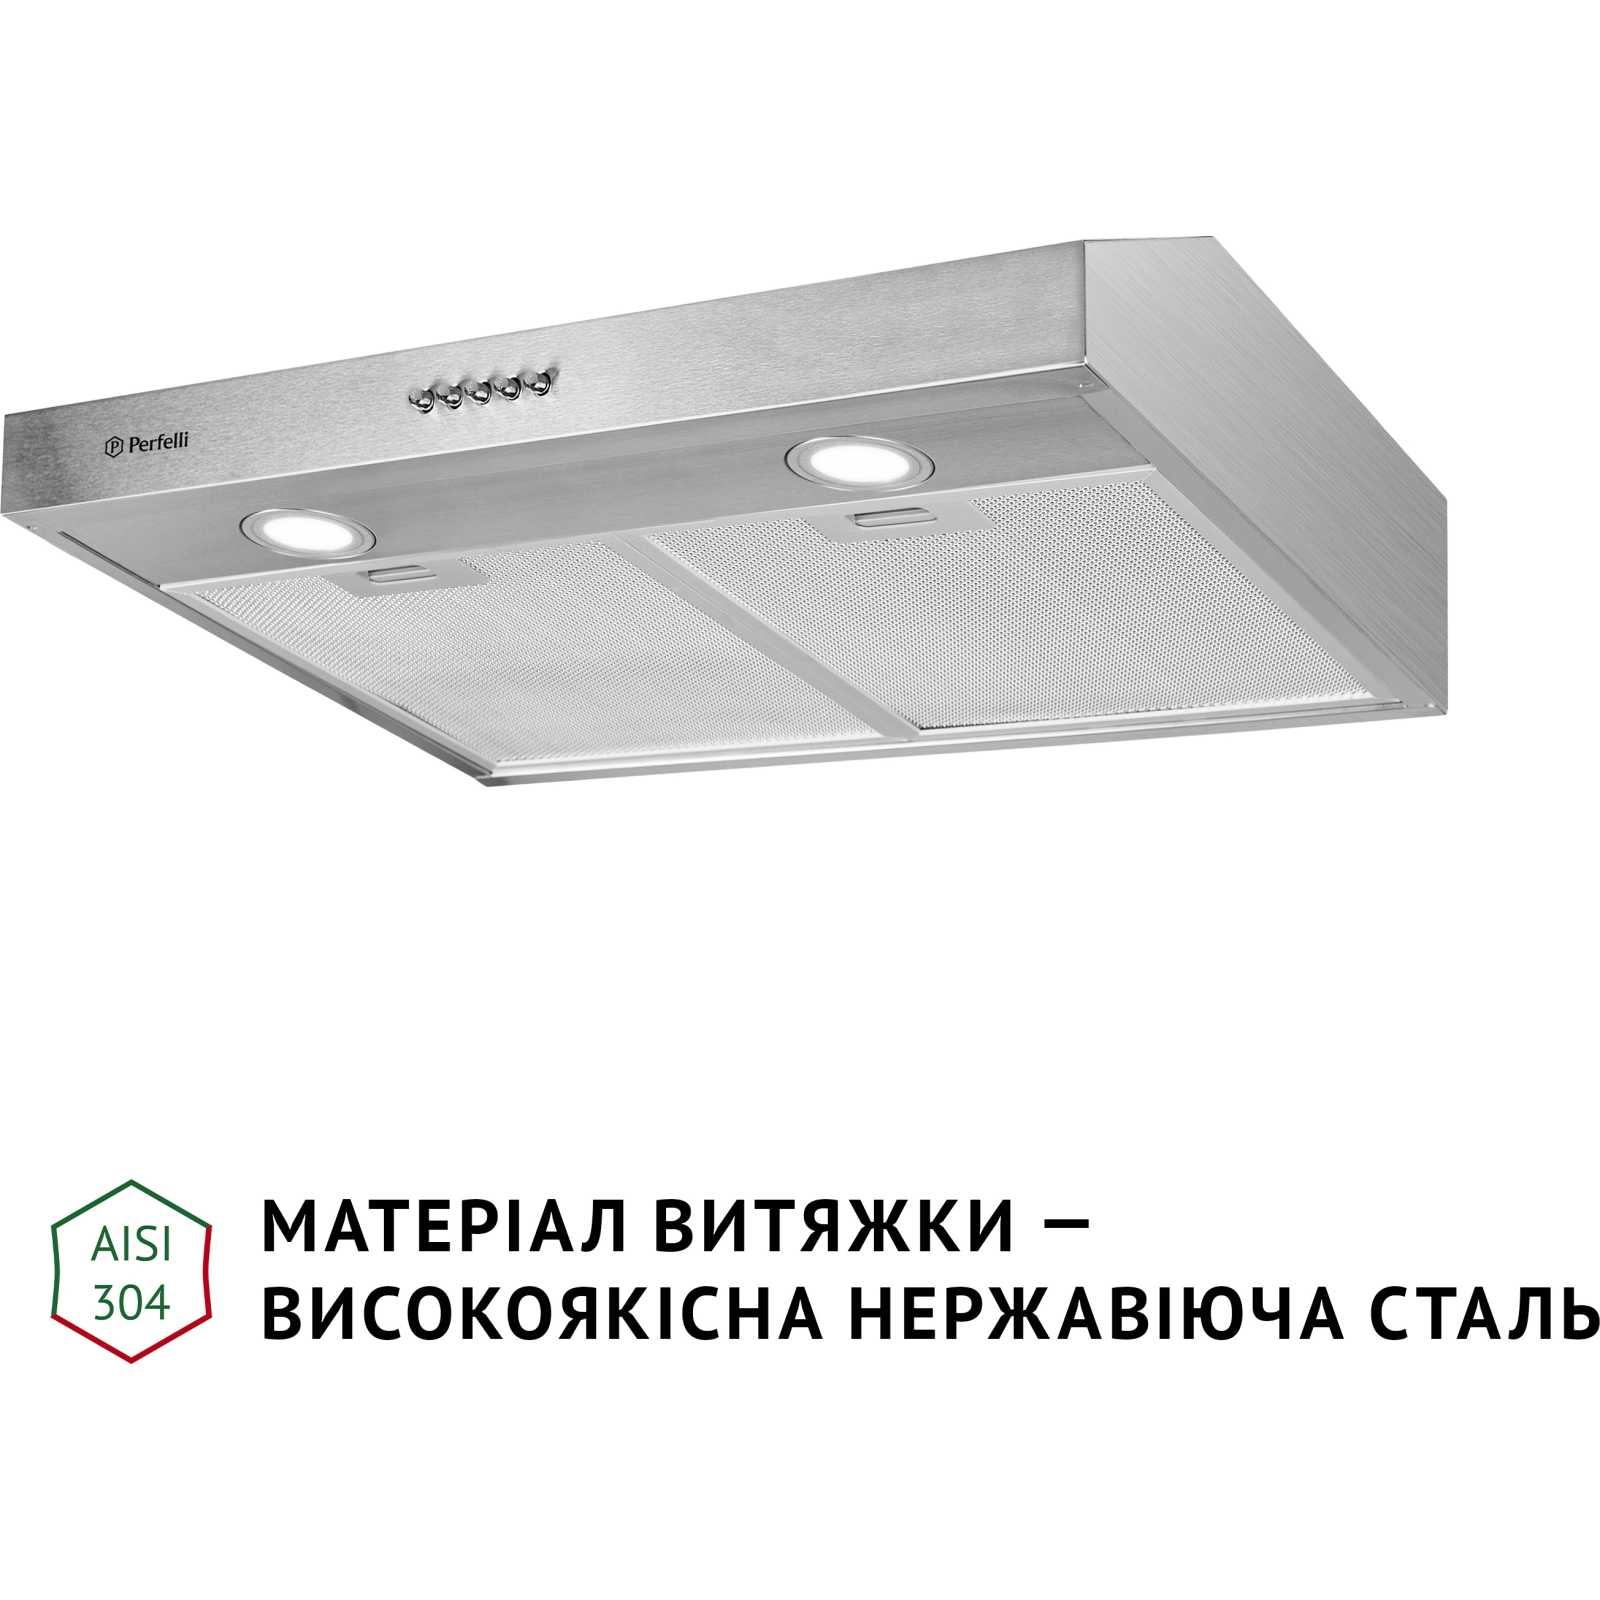 Вытяжка кухонная Perfelli PL 5002 W LED изображение 3